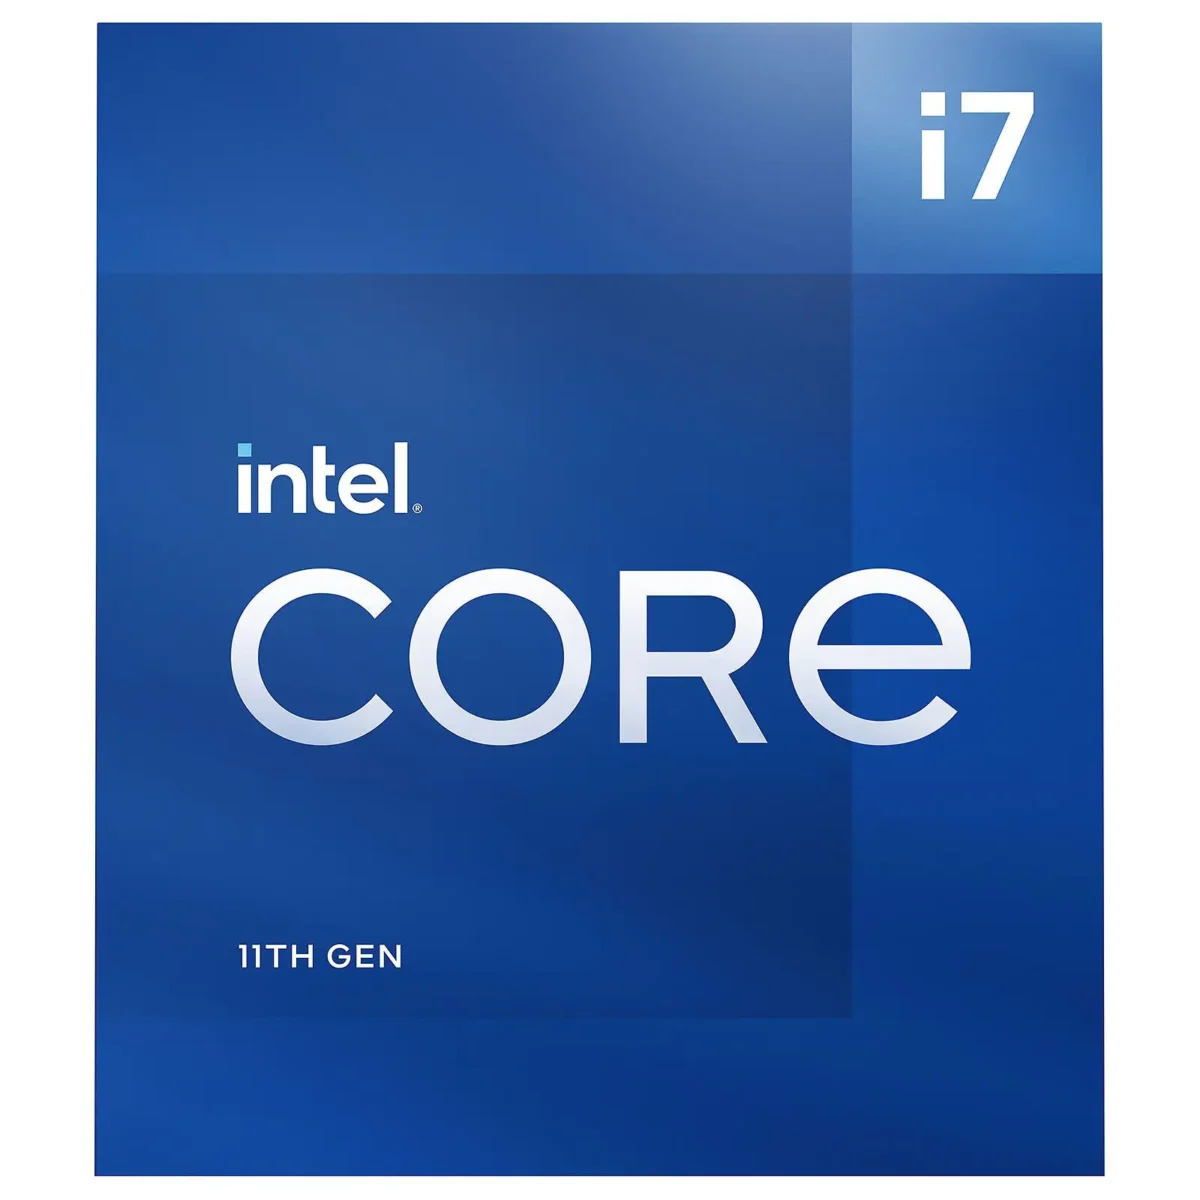 Intel Core i7-11700 prix maroc casa